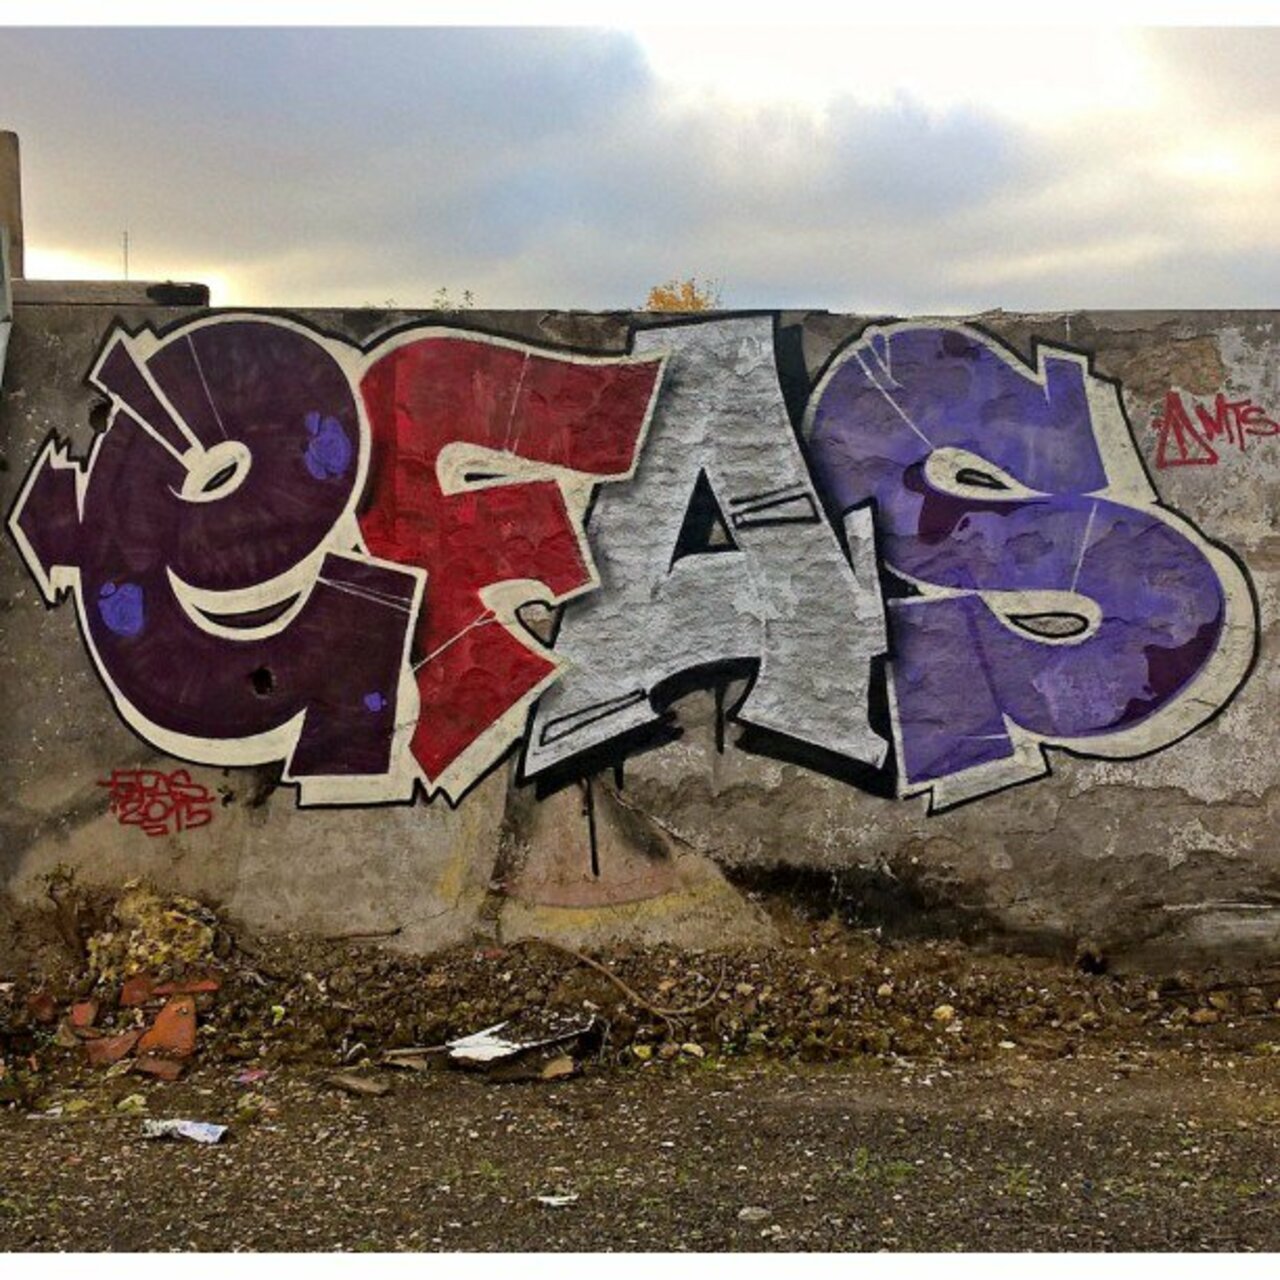 #Paris #graffiti photo by @maxdimontemarciano http://ift.tt/1GB8oyl #StreetArt https://t.co/LlJ0LFF4Zl